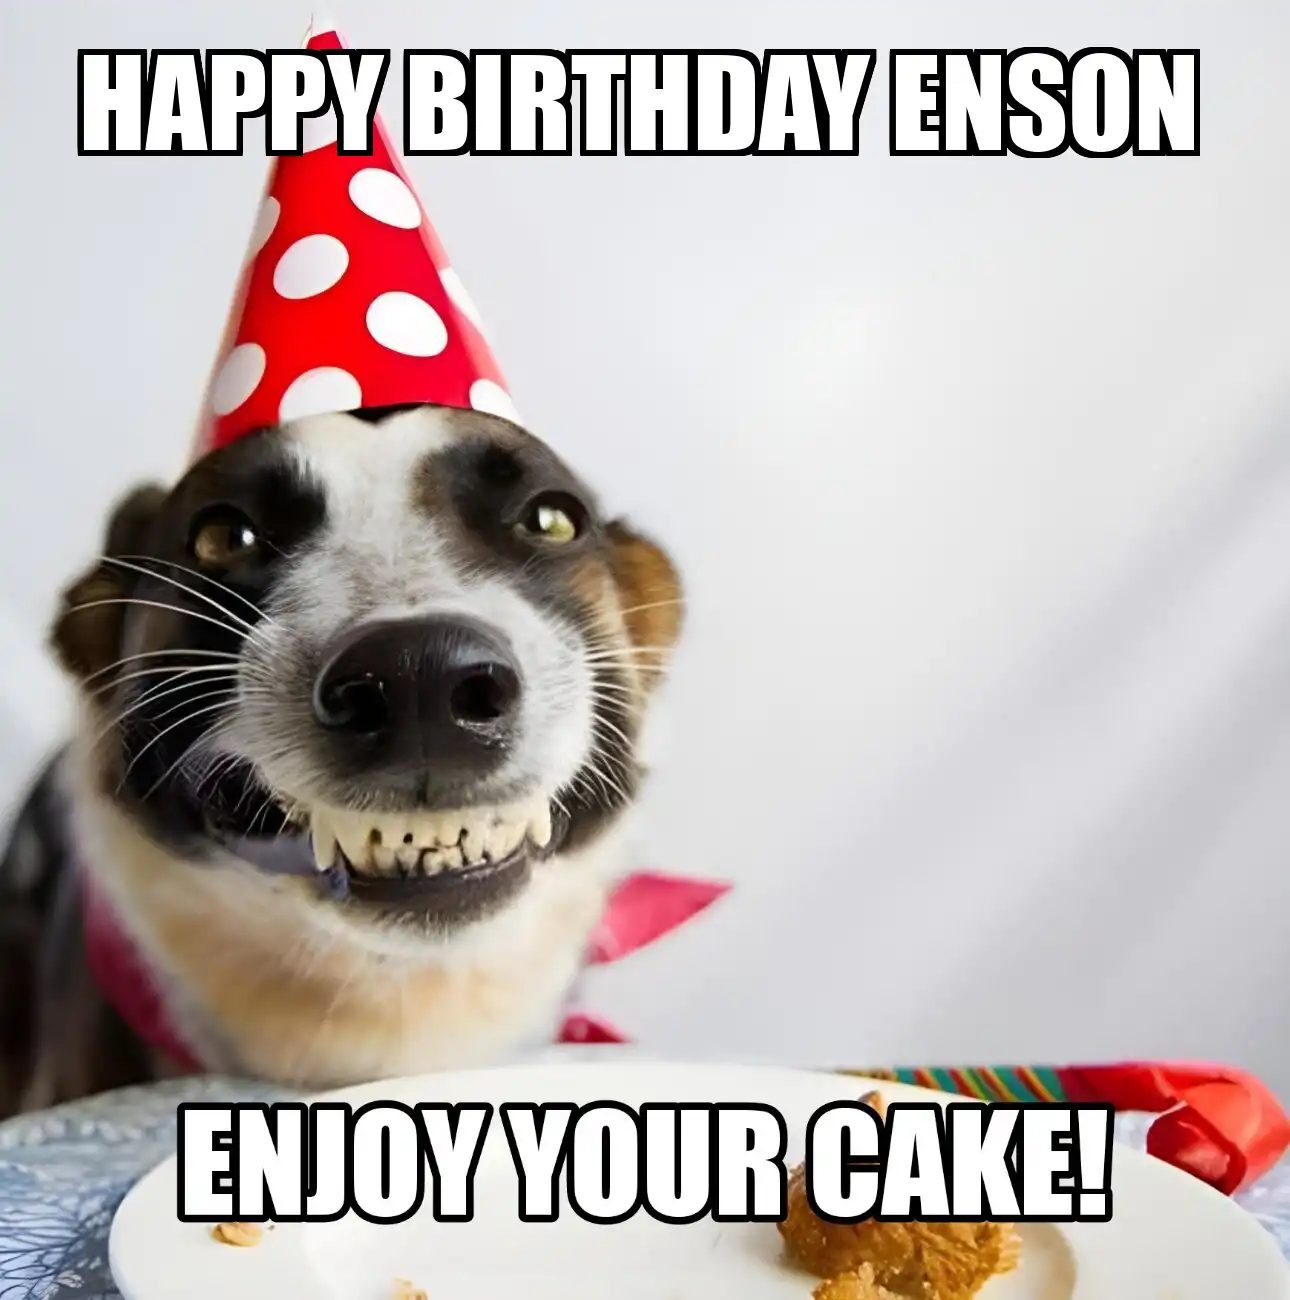 Happy Birthday Enson Enjoy Your Cake Dog Meme